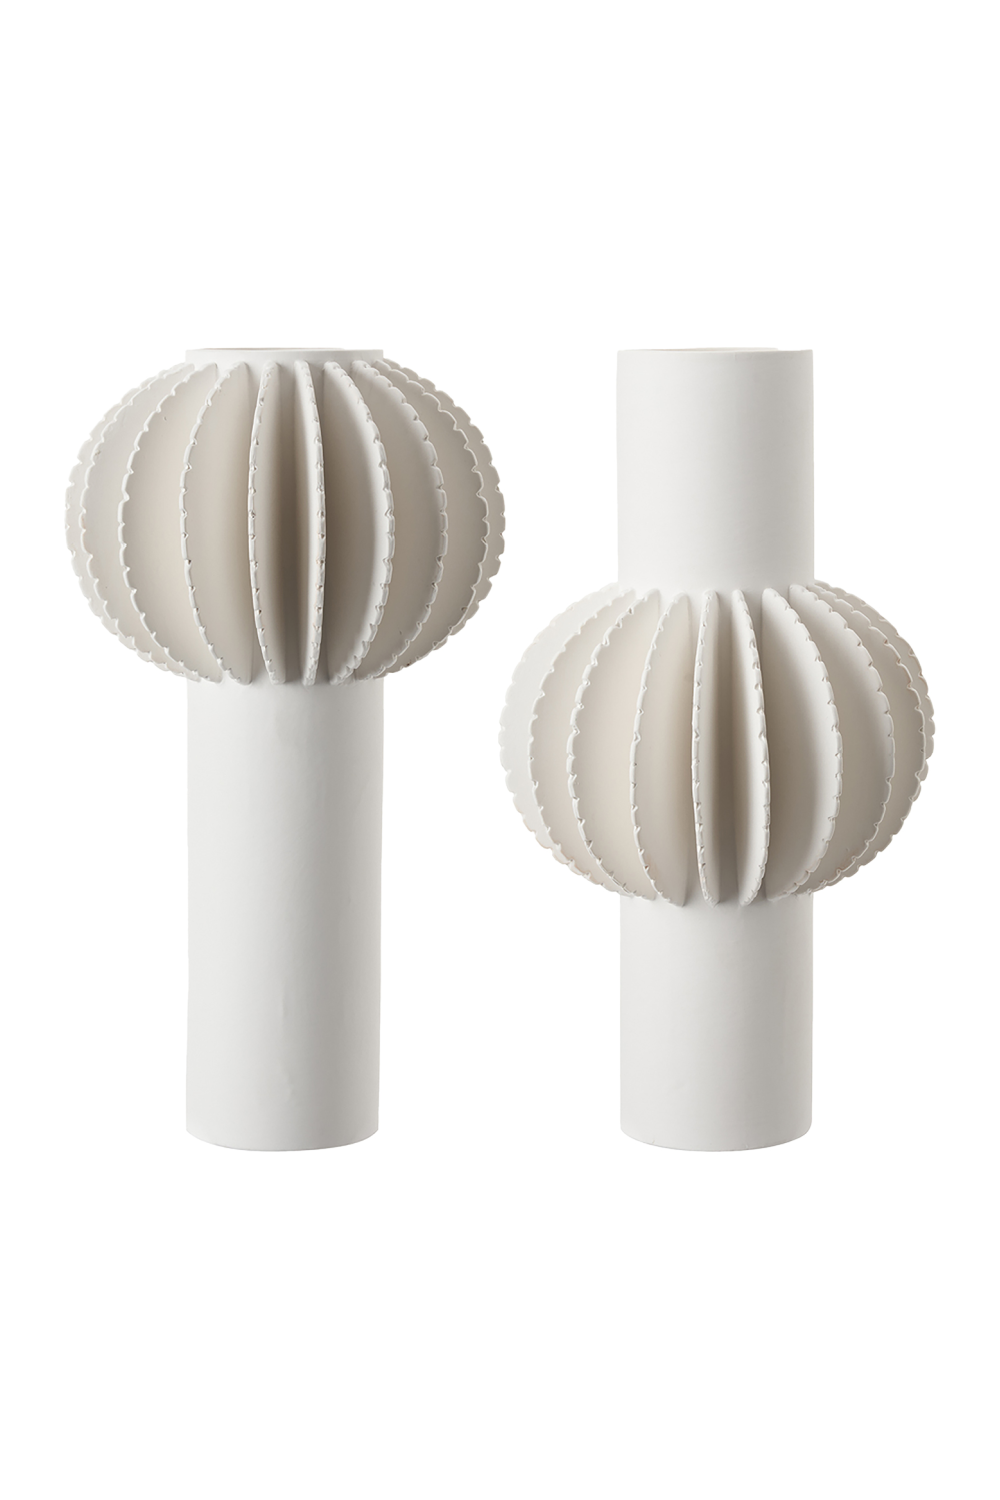 White Ceramic Petal Vase | Liang & Eimil Lara | Oroa.com